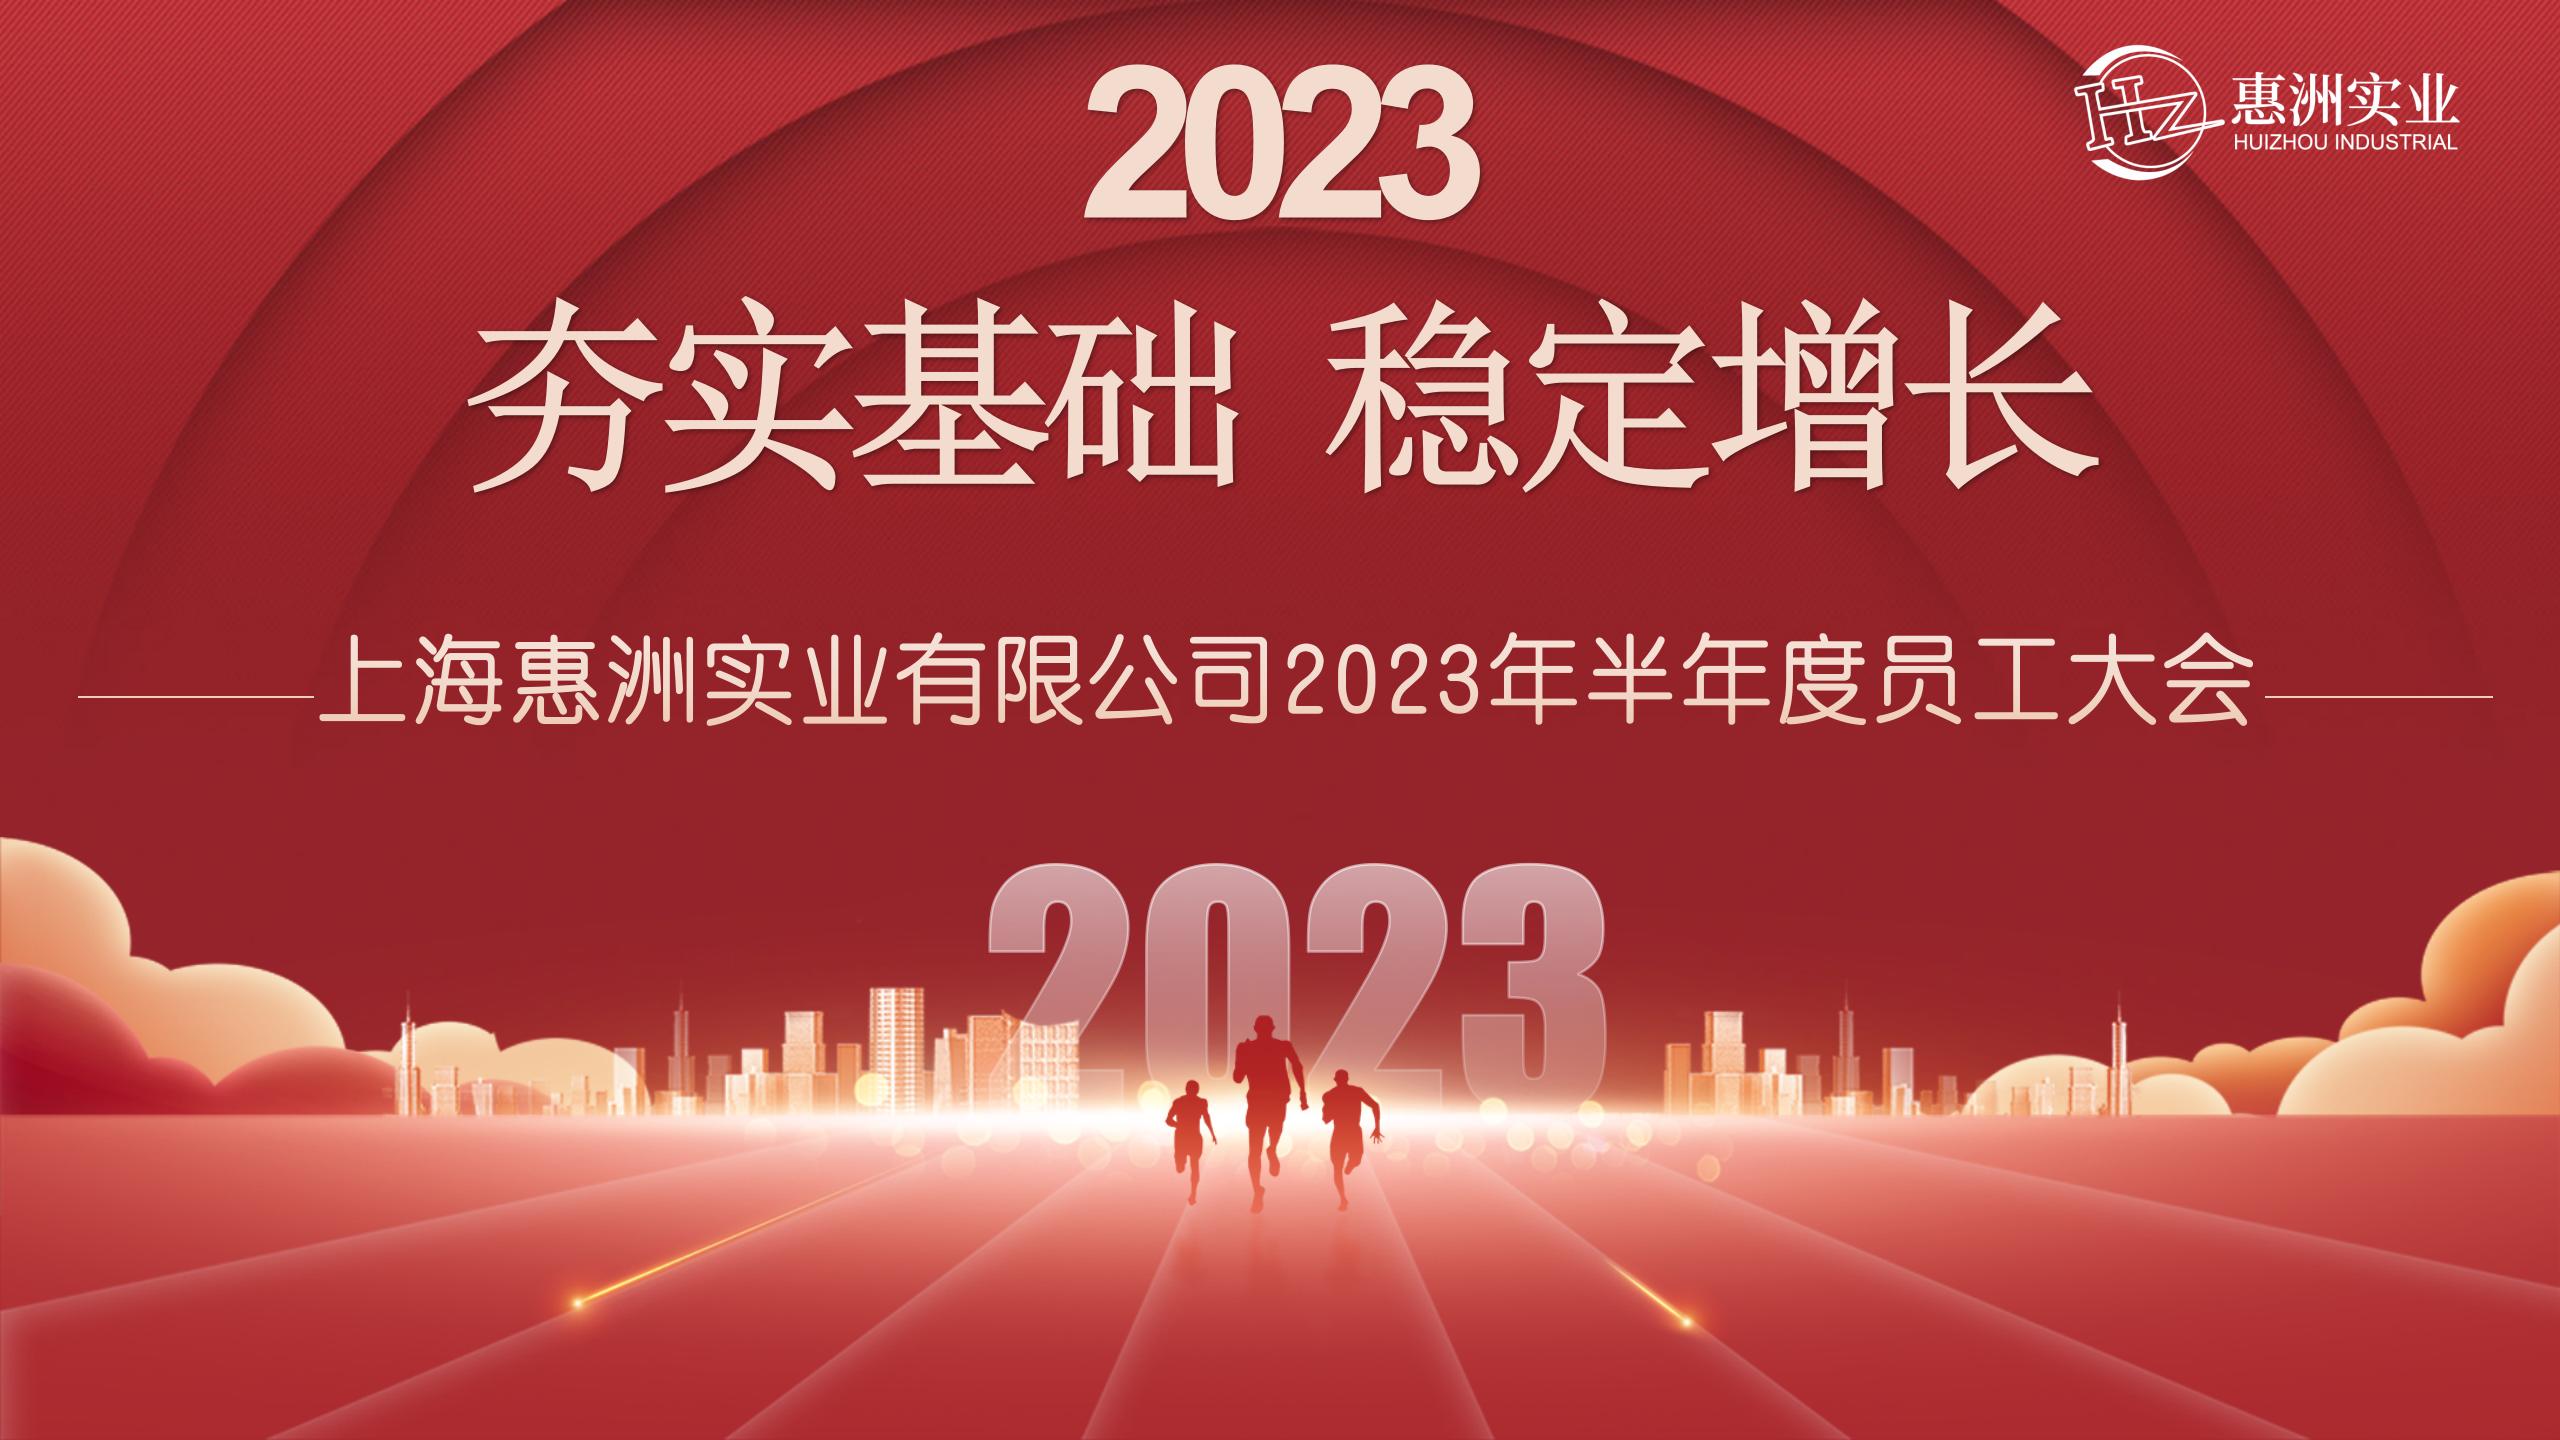 Huizhou Semi-tinuig nga Staff Meeting 2023